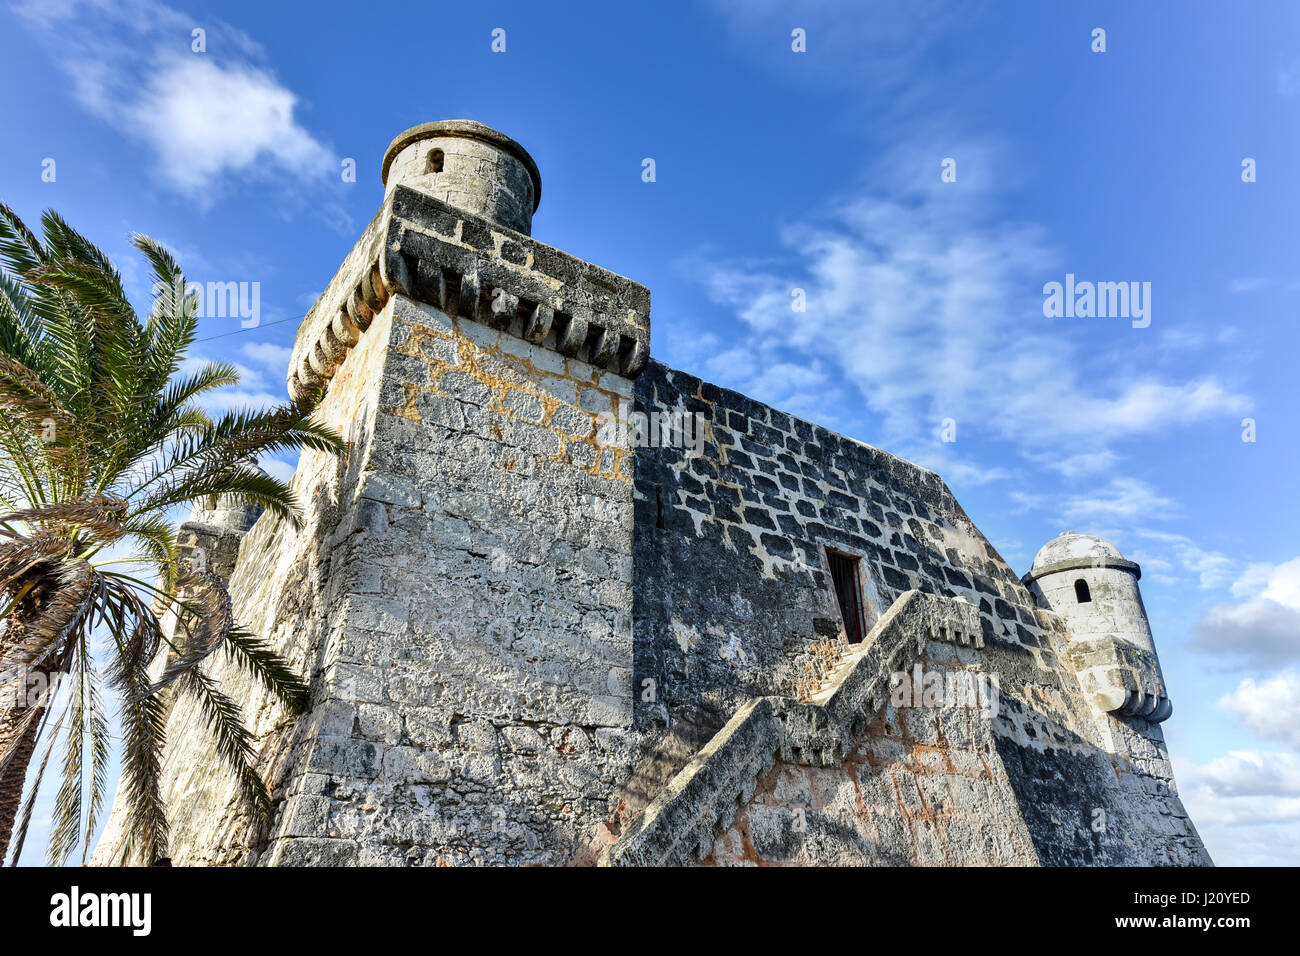 Die spanische Festung, Torreón de Cojimar, in Cohimar, Kuba. Cojimar ist ein kleines Fischerdorf östlich von Havanna. Es war eine Inspiration für Ernest Hemingway " Stockfoto